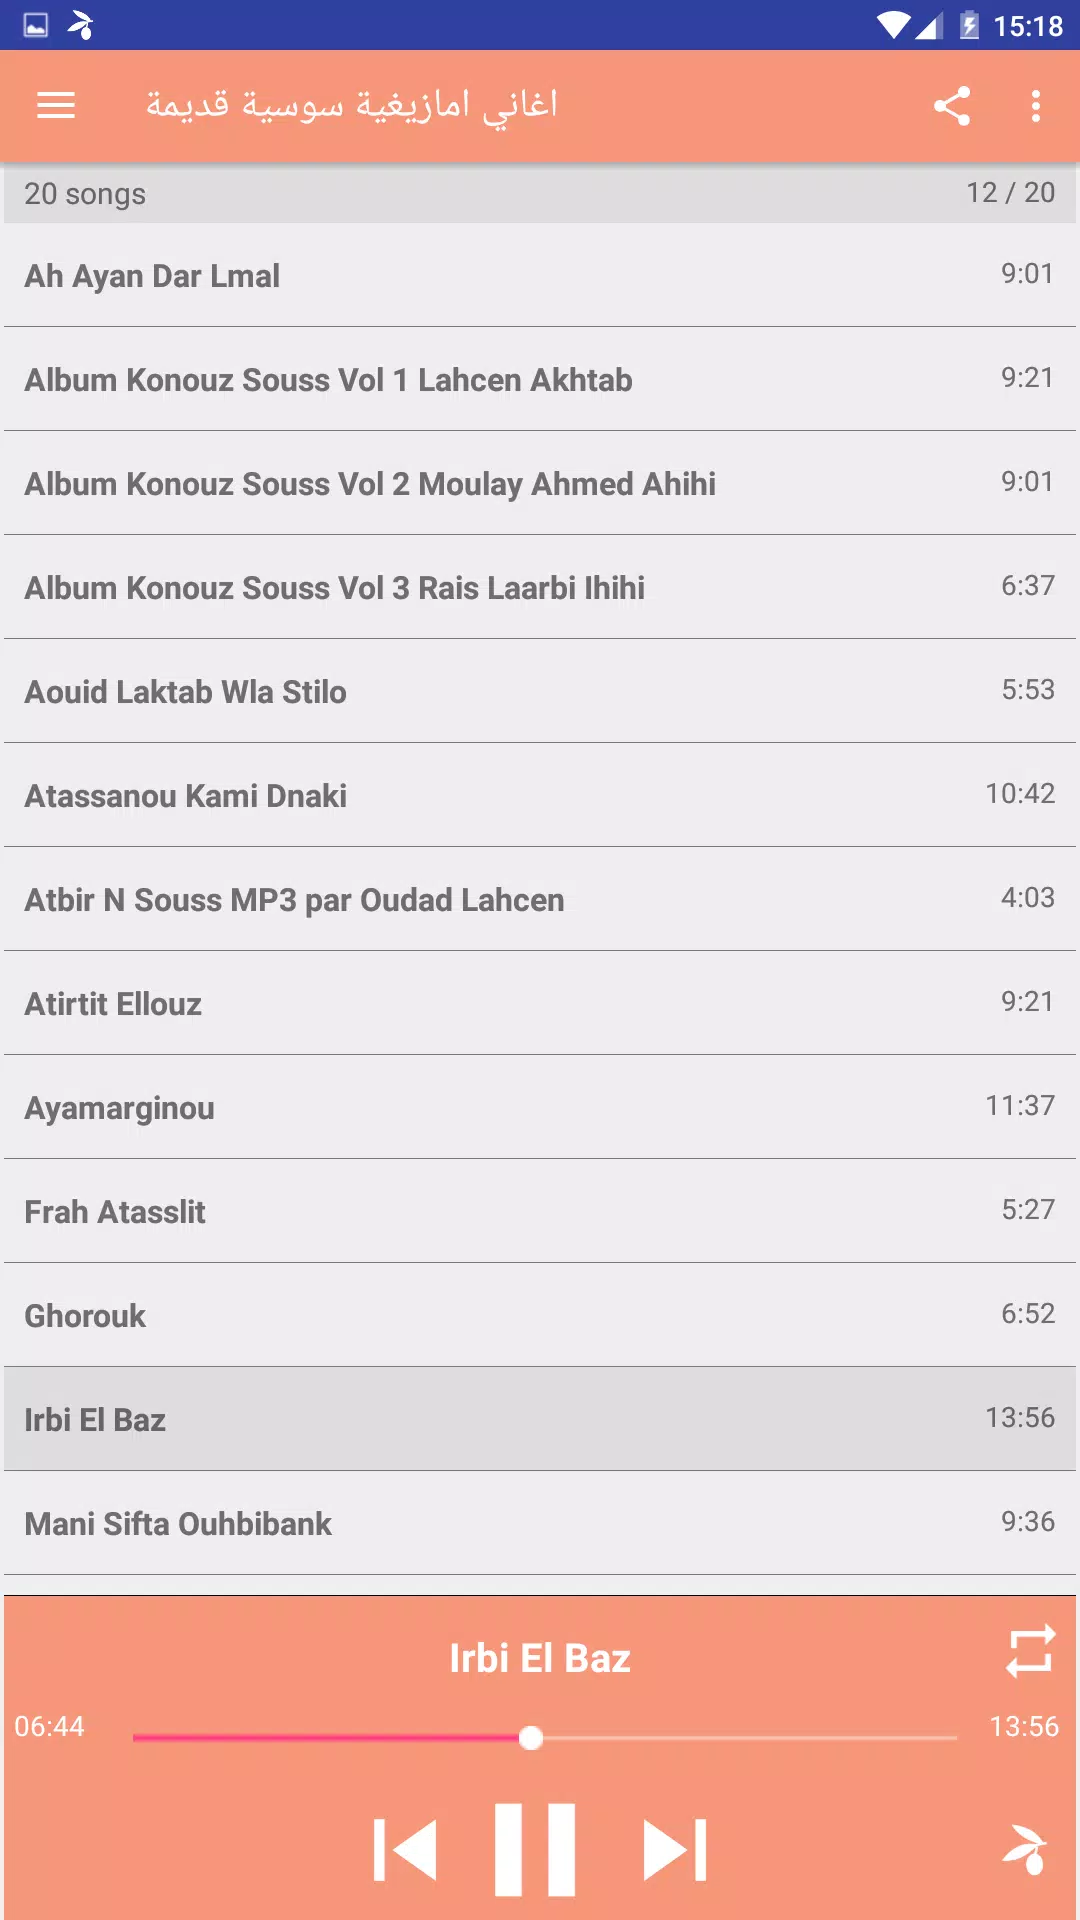 اغاني امازيغية سوسية قديمة APK for Android Download